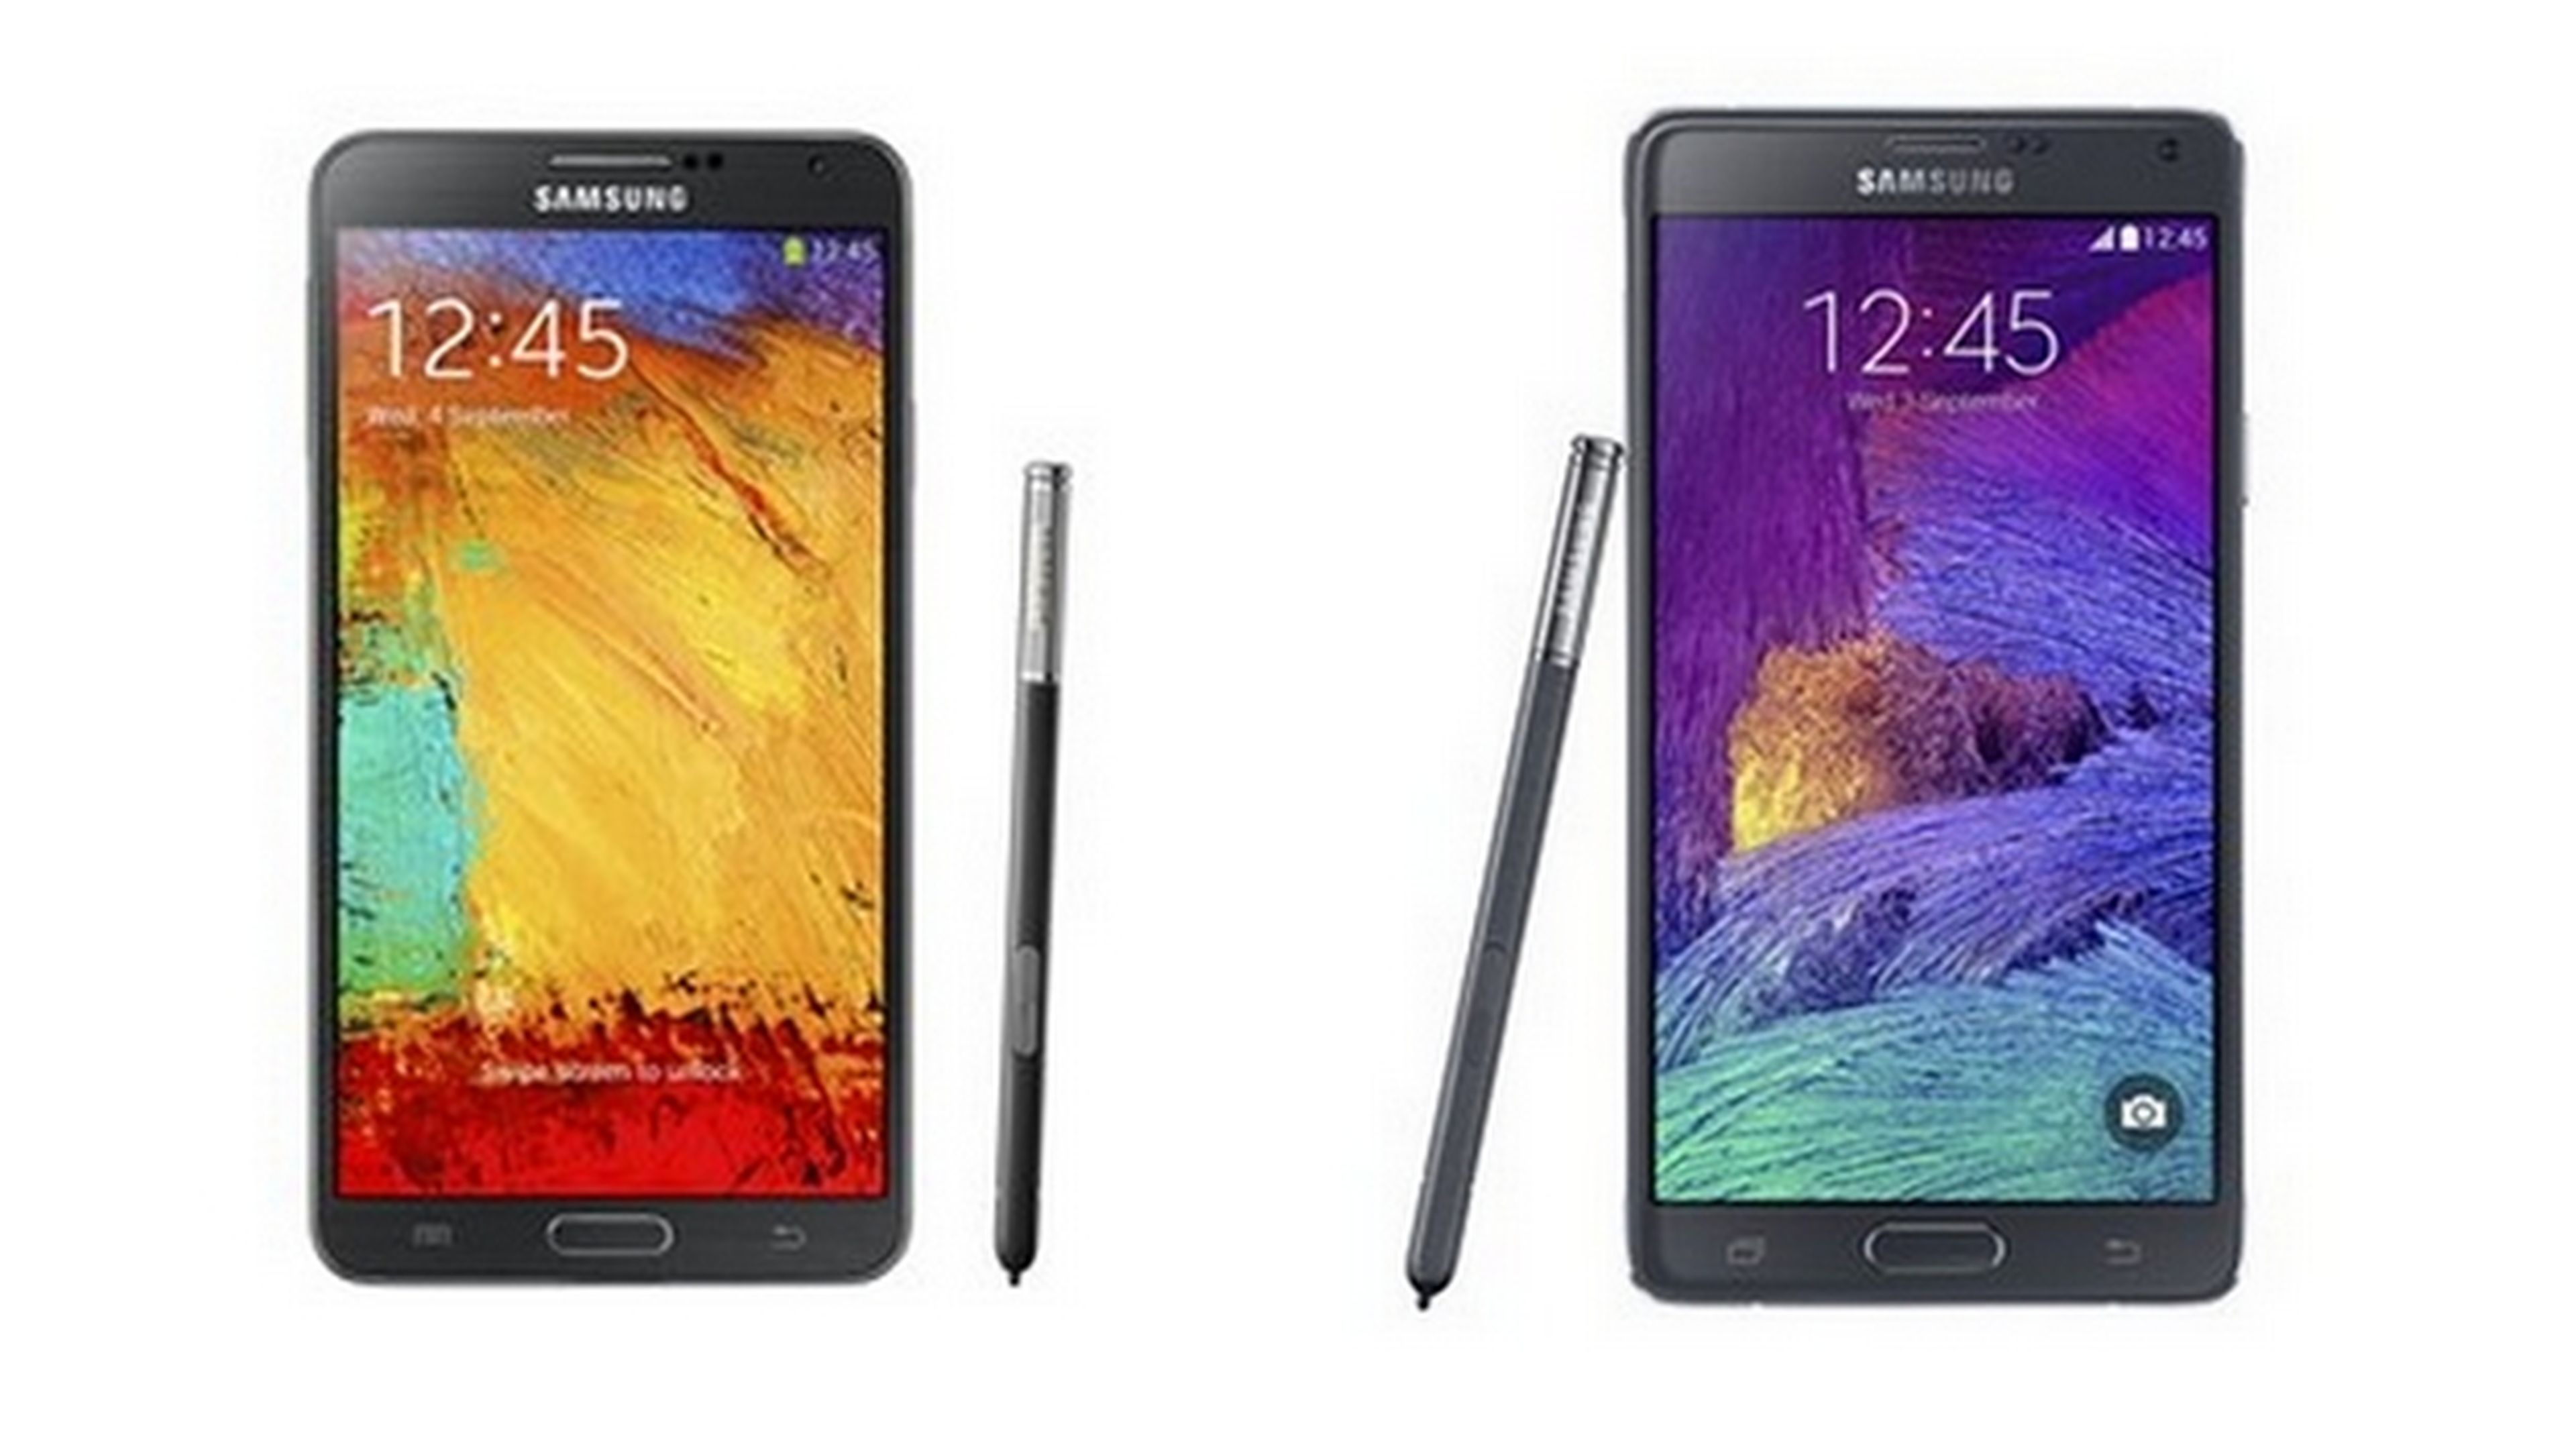 Samsung Galaxy Note 4, comparativa con el Galaxy Note 3